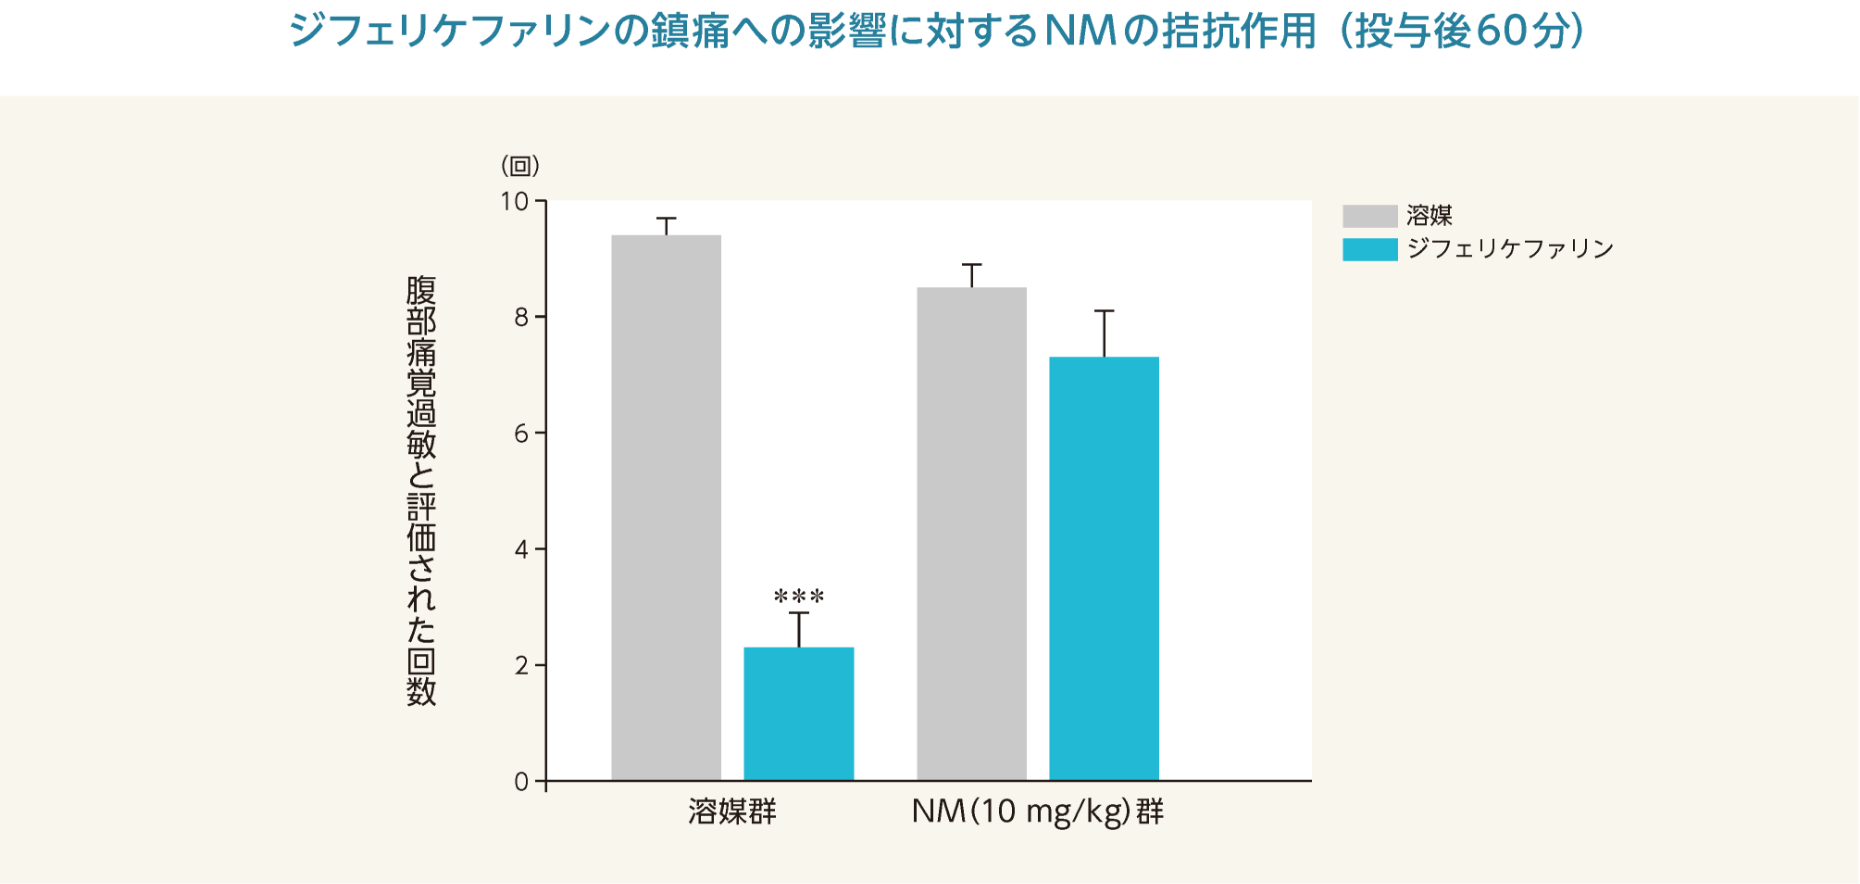 ジフェリケファリンの鎮痛への影響に対するNMの拮抗作用（投与後60分）